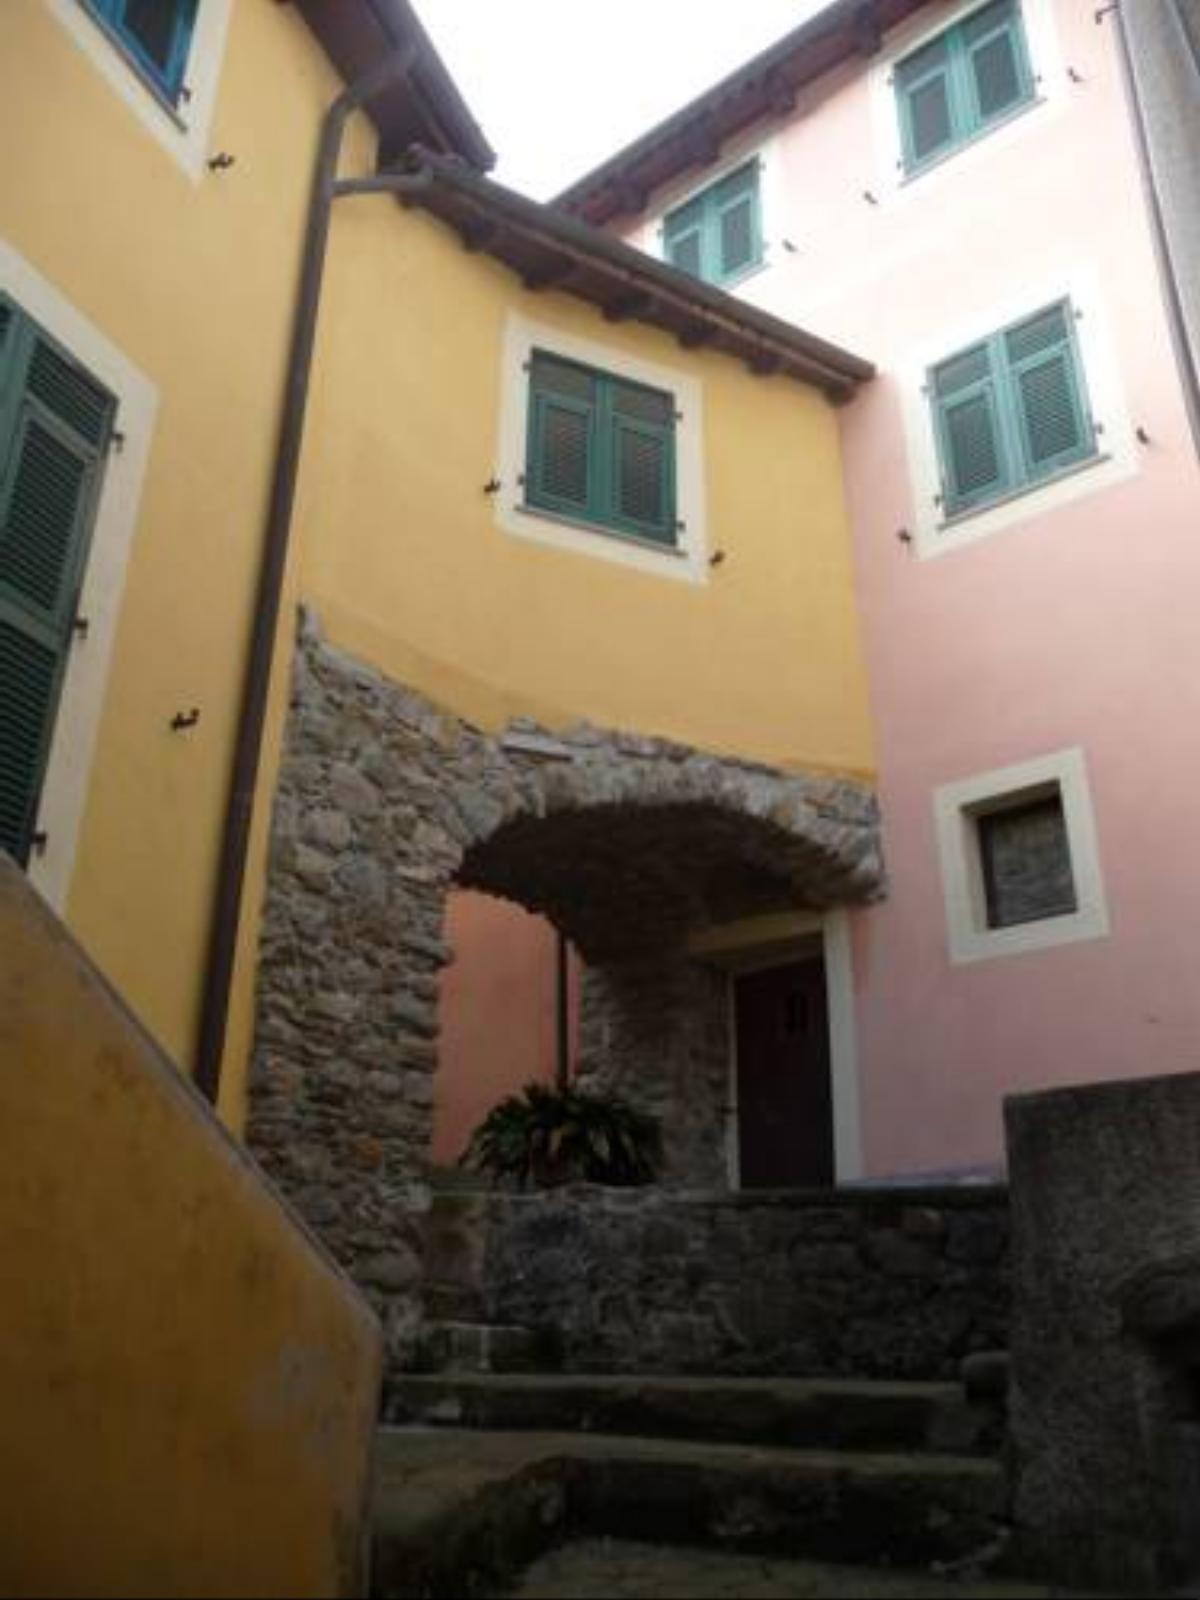 Borgo Crovarola